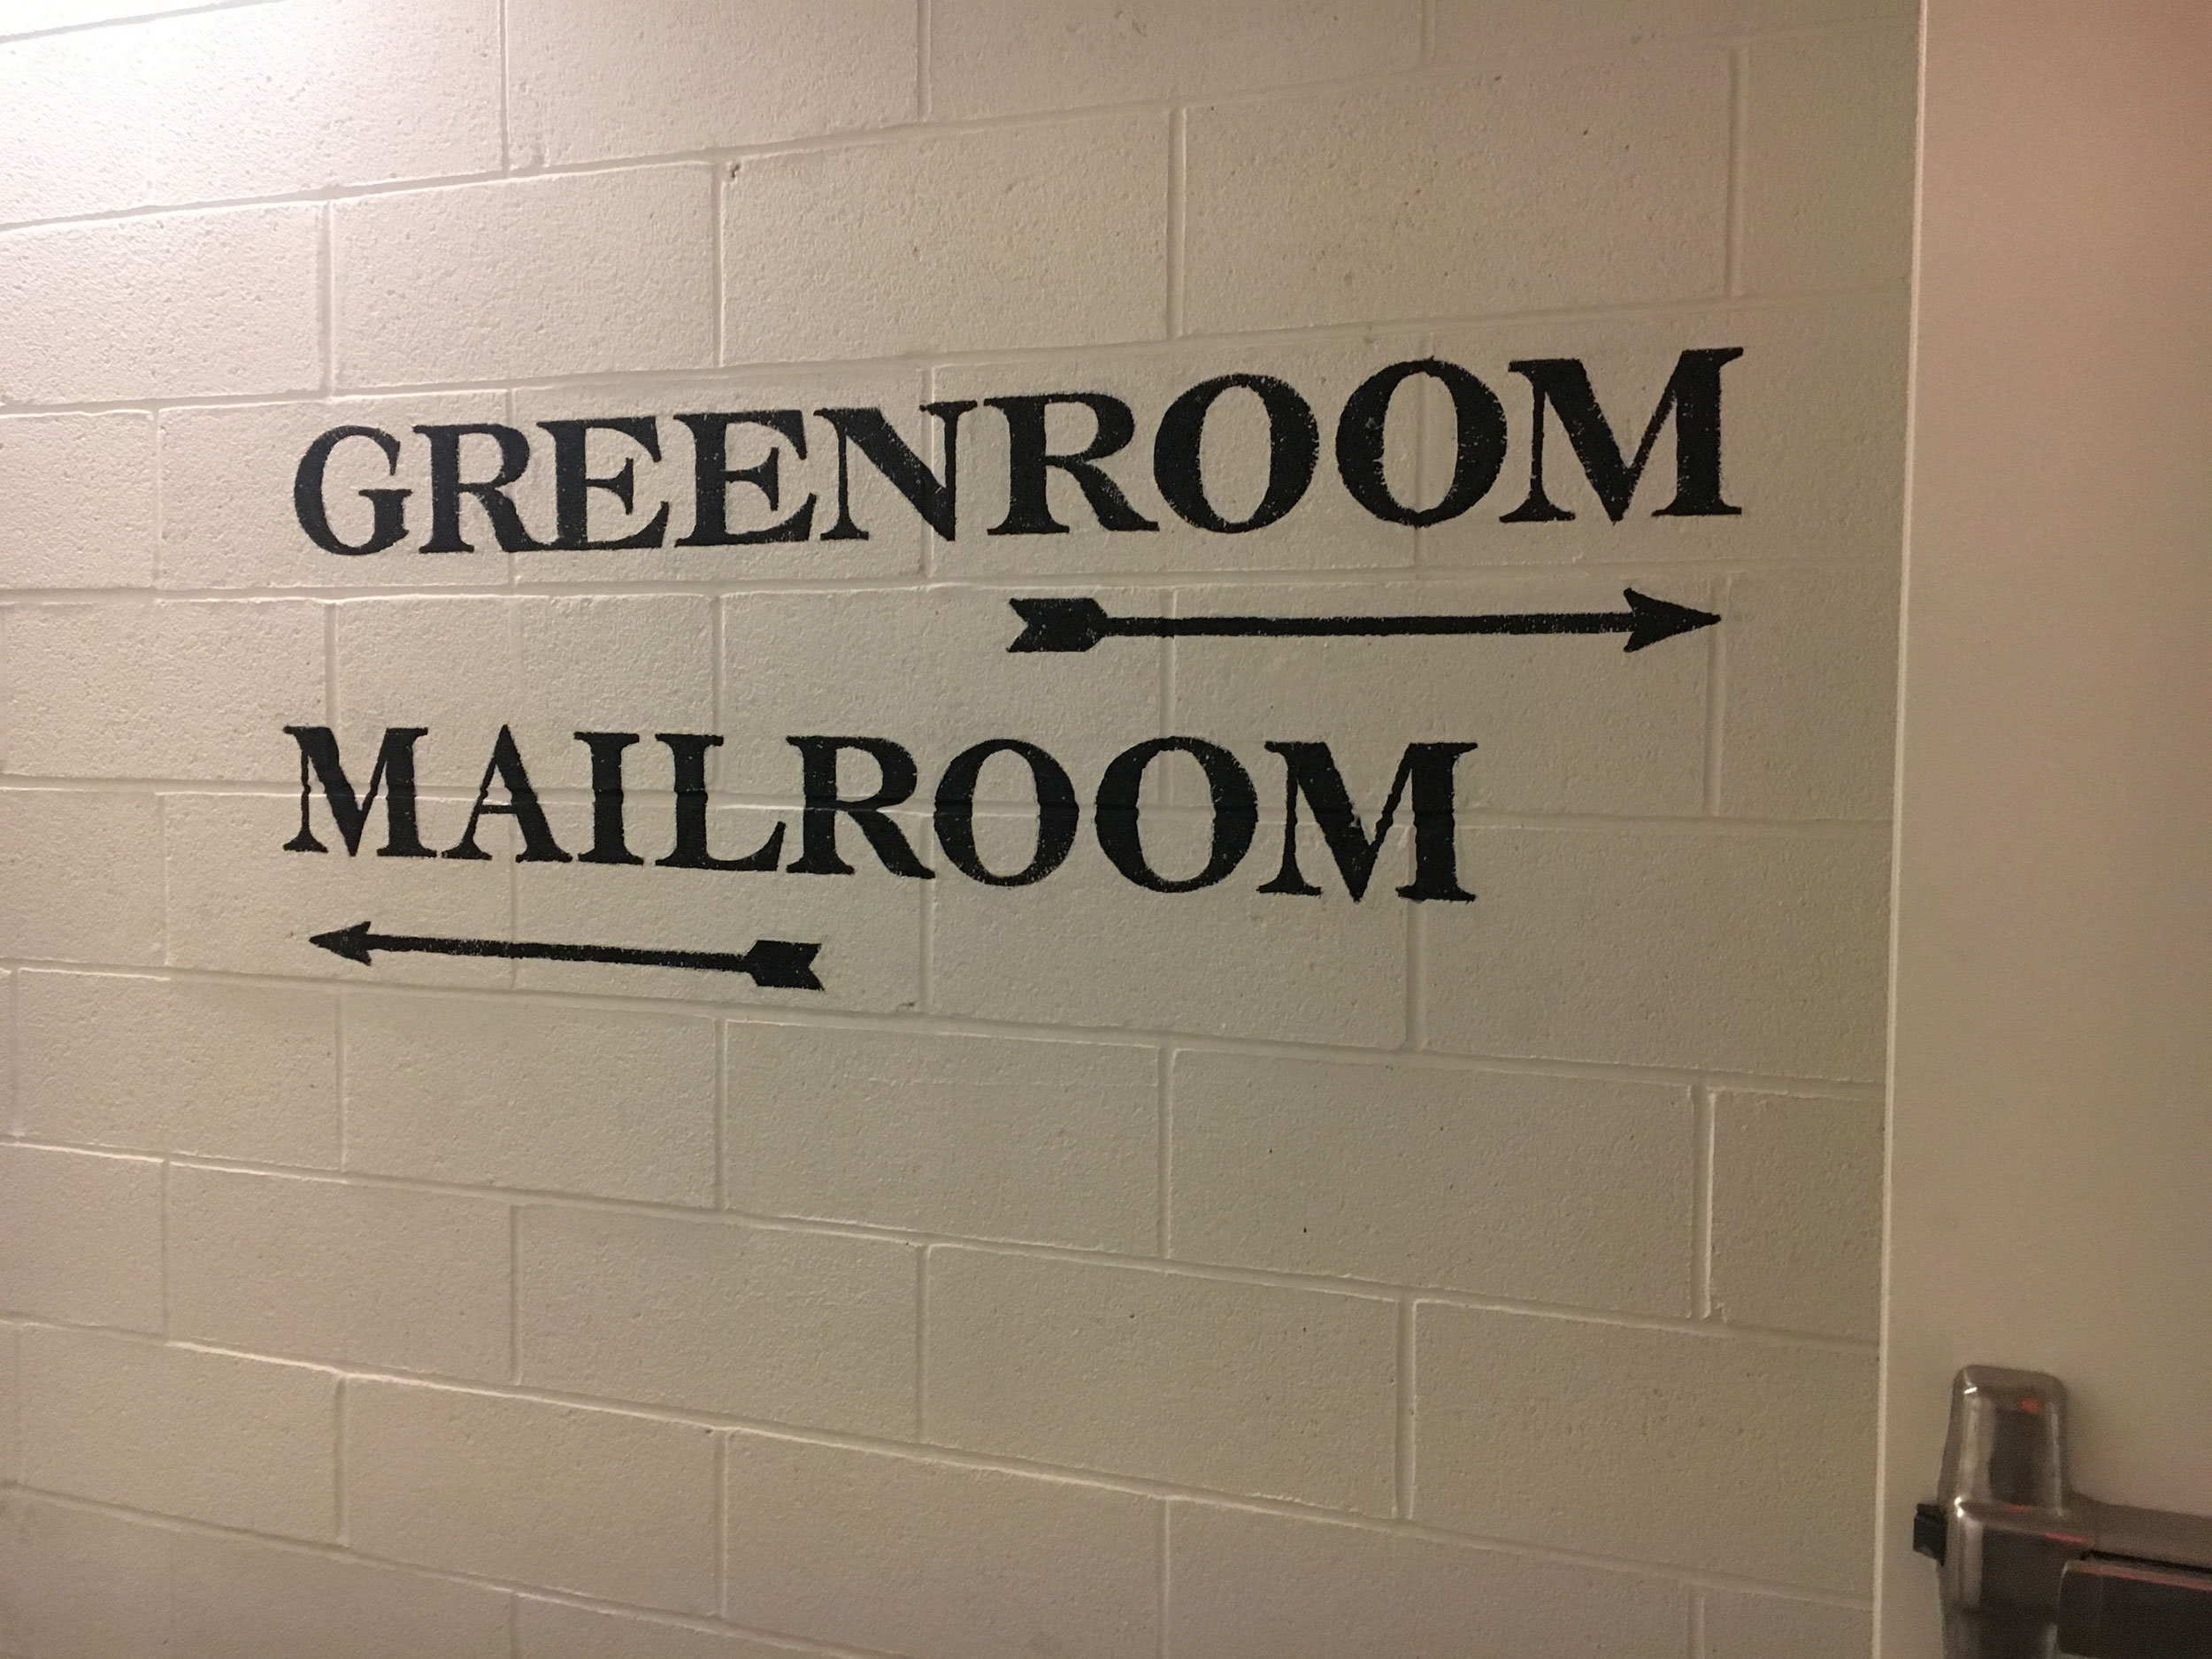 Greenroom-Mailroom